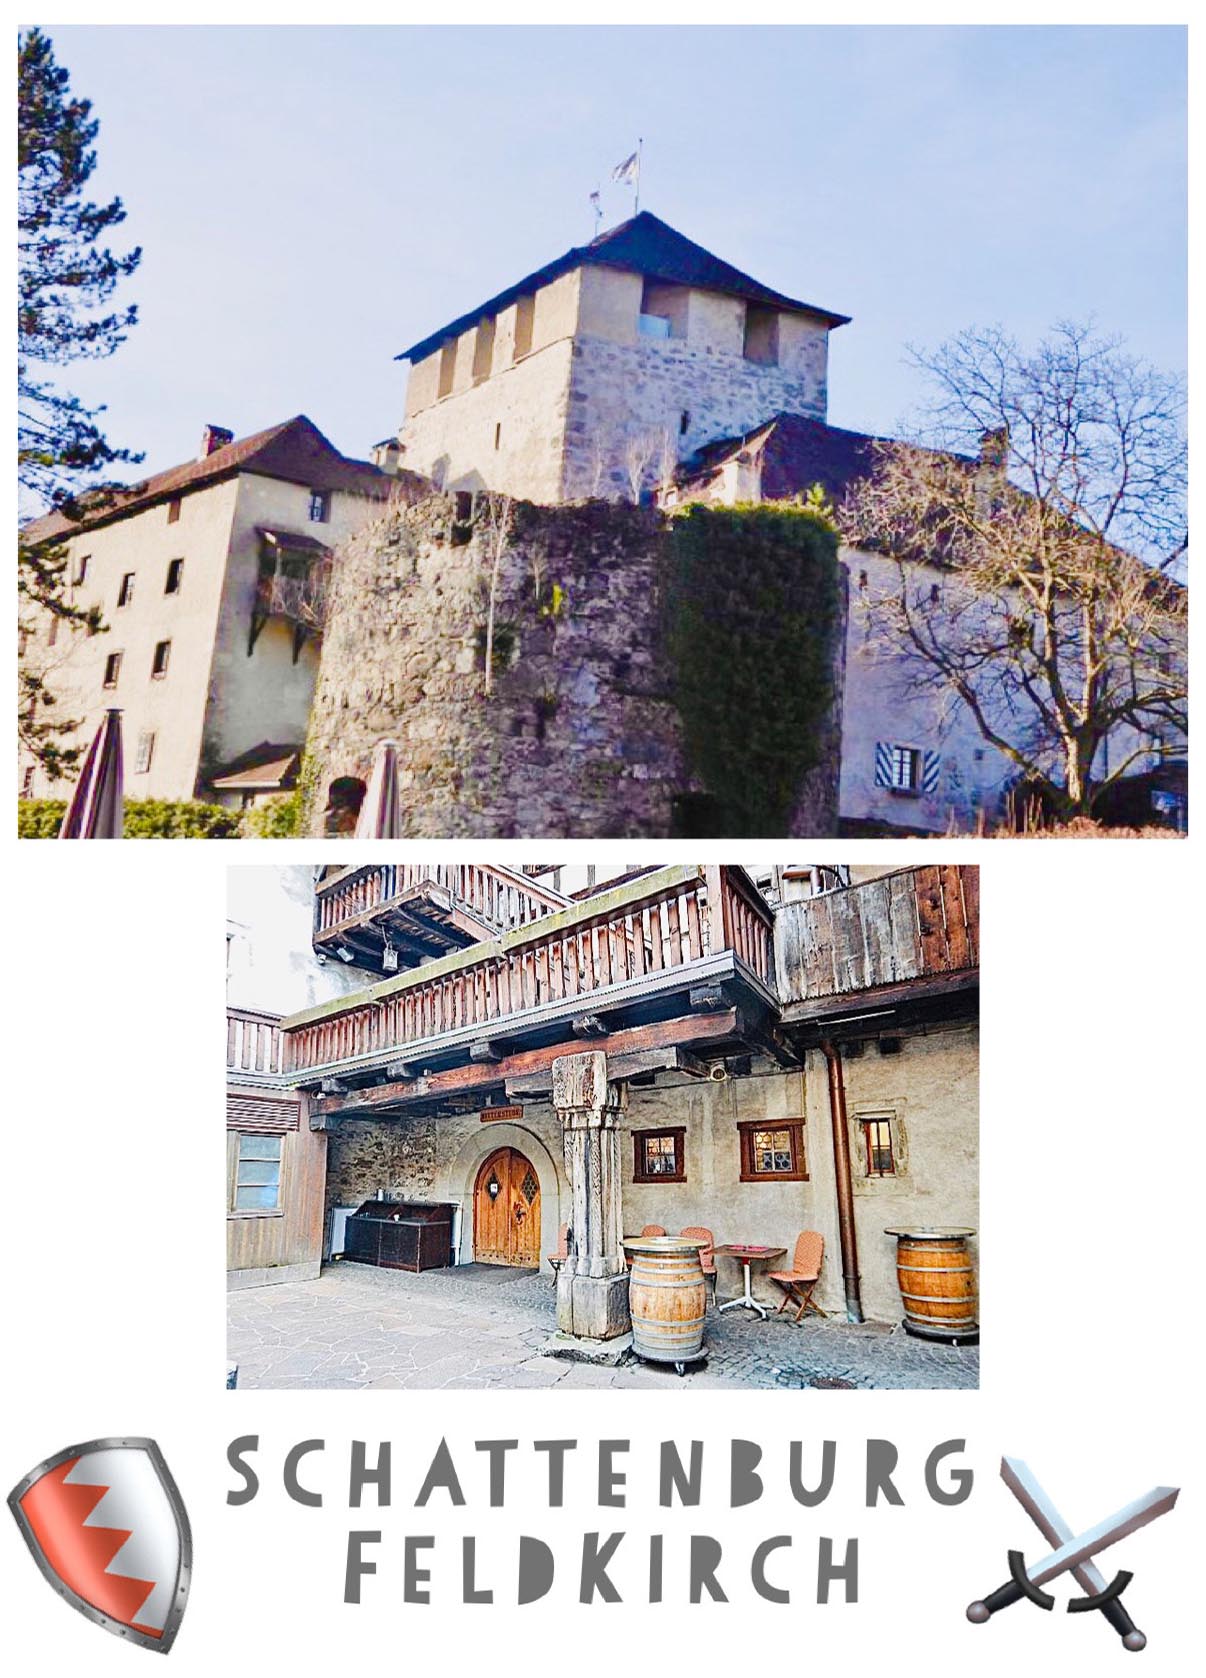 628 Die hochmittelalterliche Burg stellt eine der besterhaltenen Burganlagen Mitteleuropas dar. Erbaut um 1200. Vorarlberg, Österreich